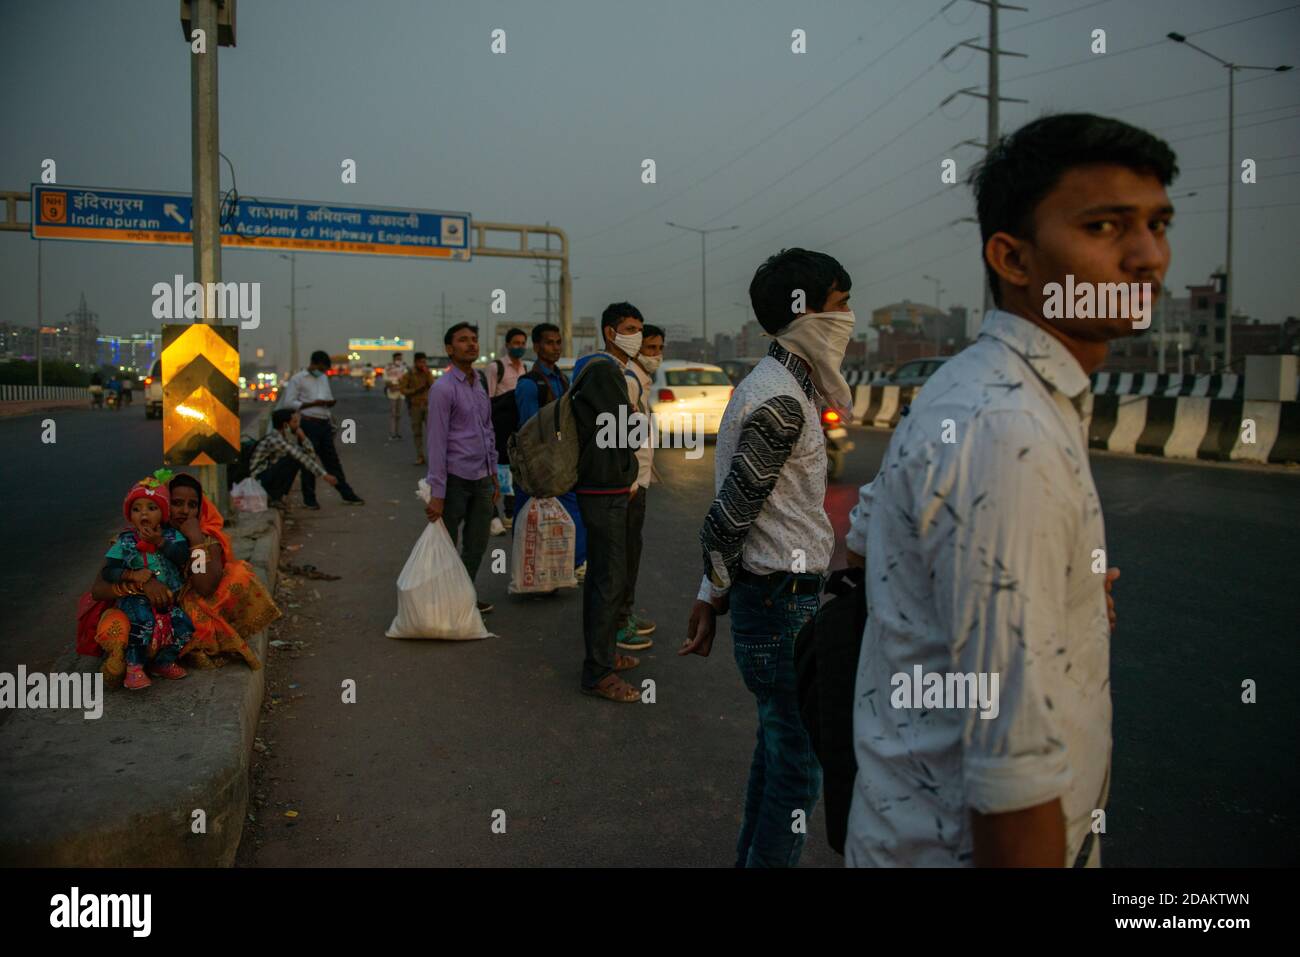 Les travailleurs migrants attendent les bus jusqu'au soir avant les célébrations de Diwali.UN festival majeur dans la religion hindoue, la plupart des gens veulent célébrer Diwali avec la famille pour qu'ils doivent rentrer chez eux. Actuellement, les trains ne sont pas entièrement opérationnels et les gens voyagent en bus. Banque D'Images